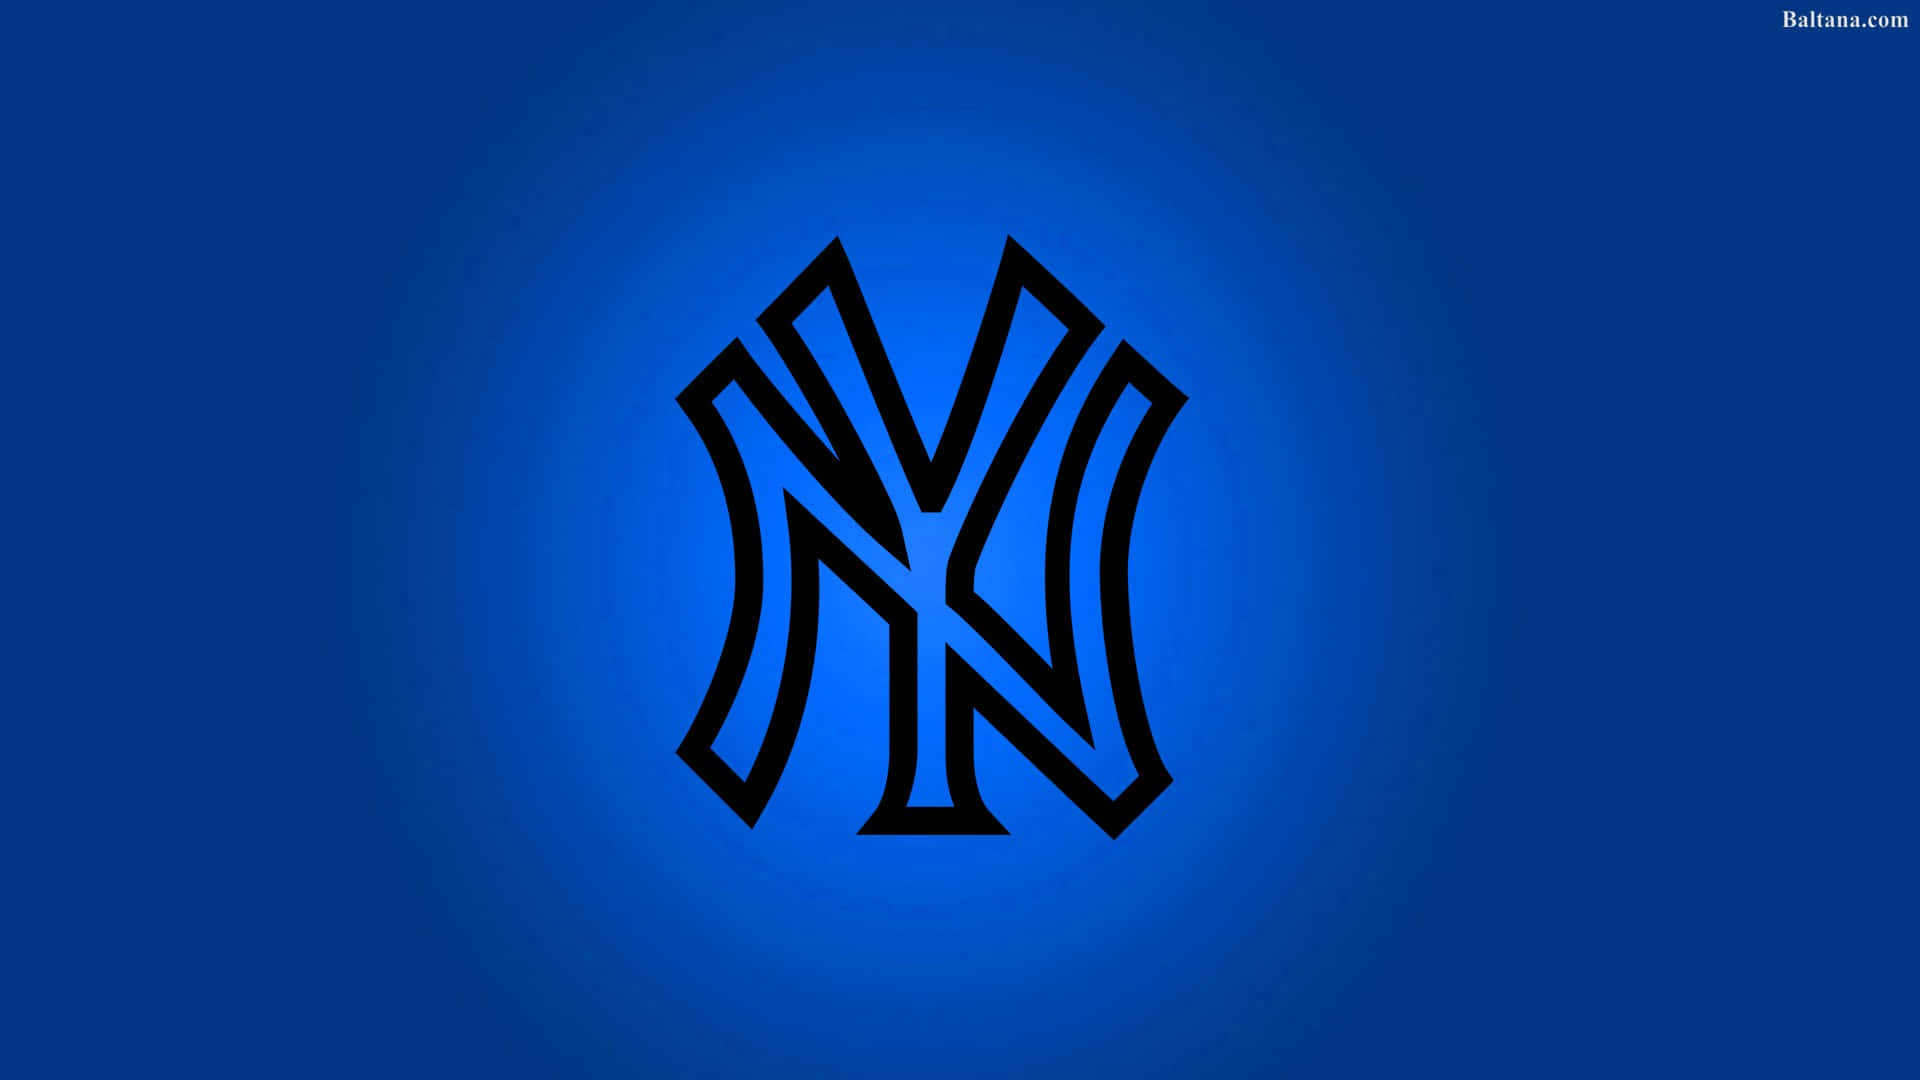 New York Yankees tager på hjemmebane til et spil. Wallpaper